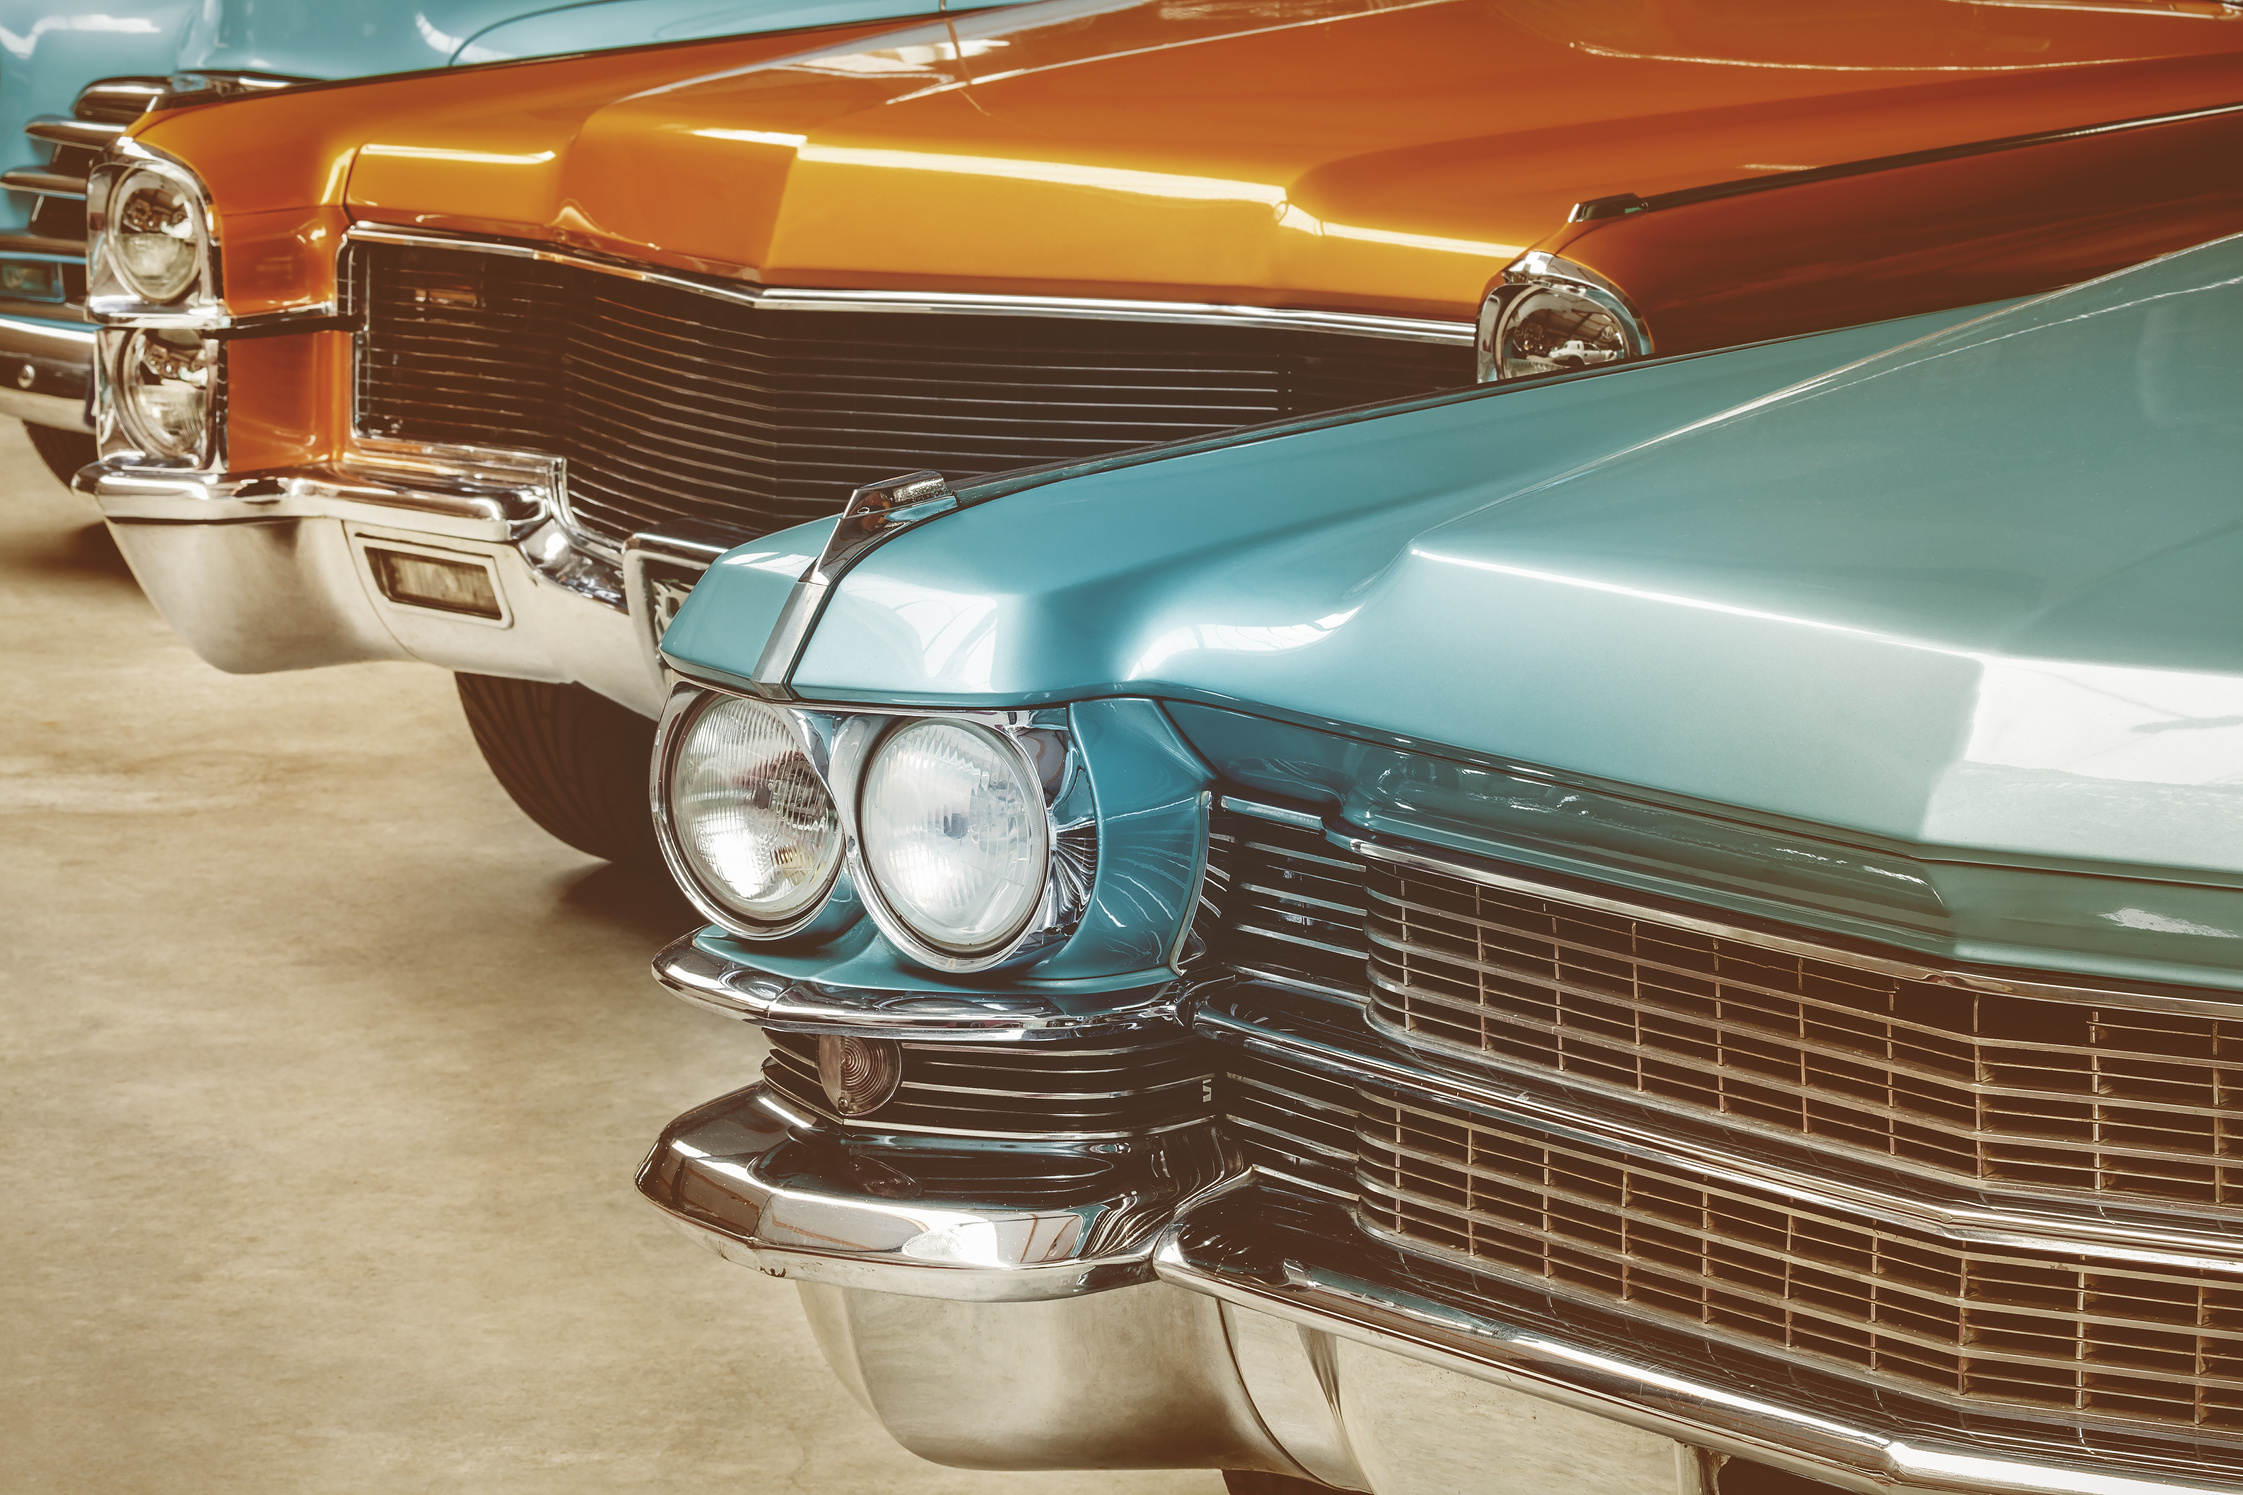  Vintage American Cars